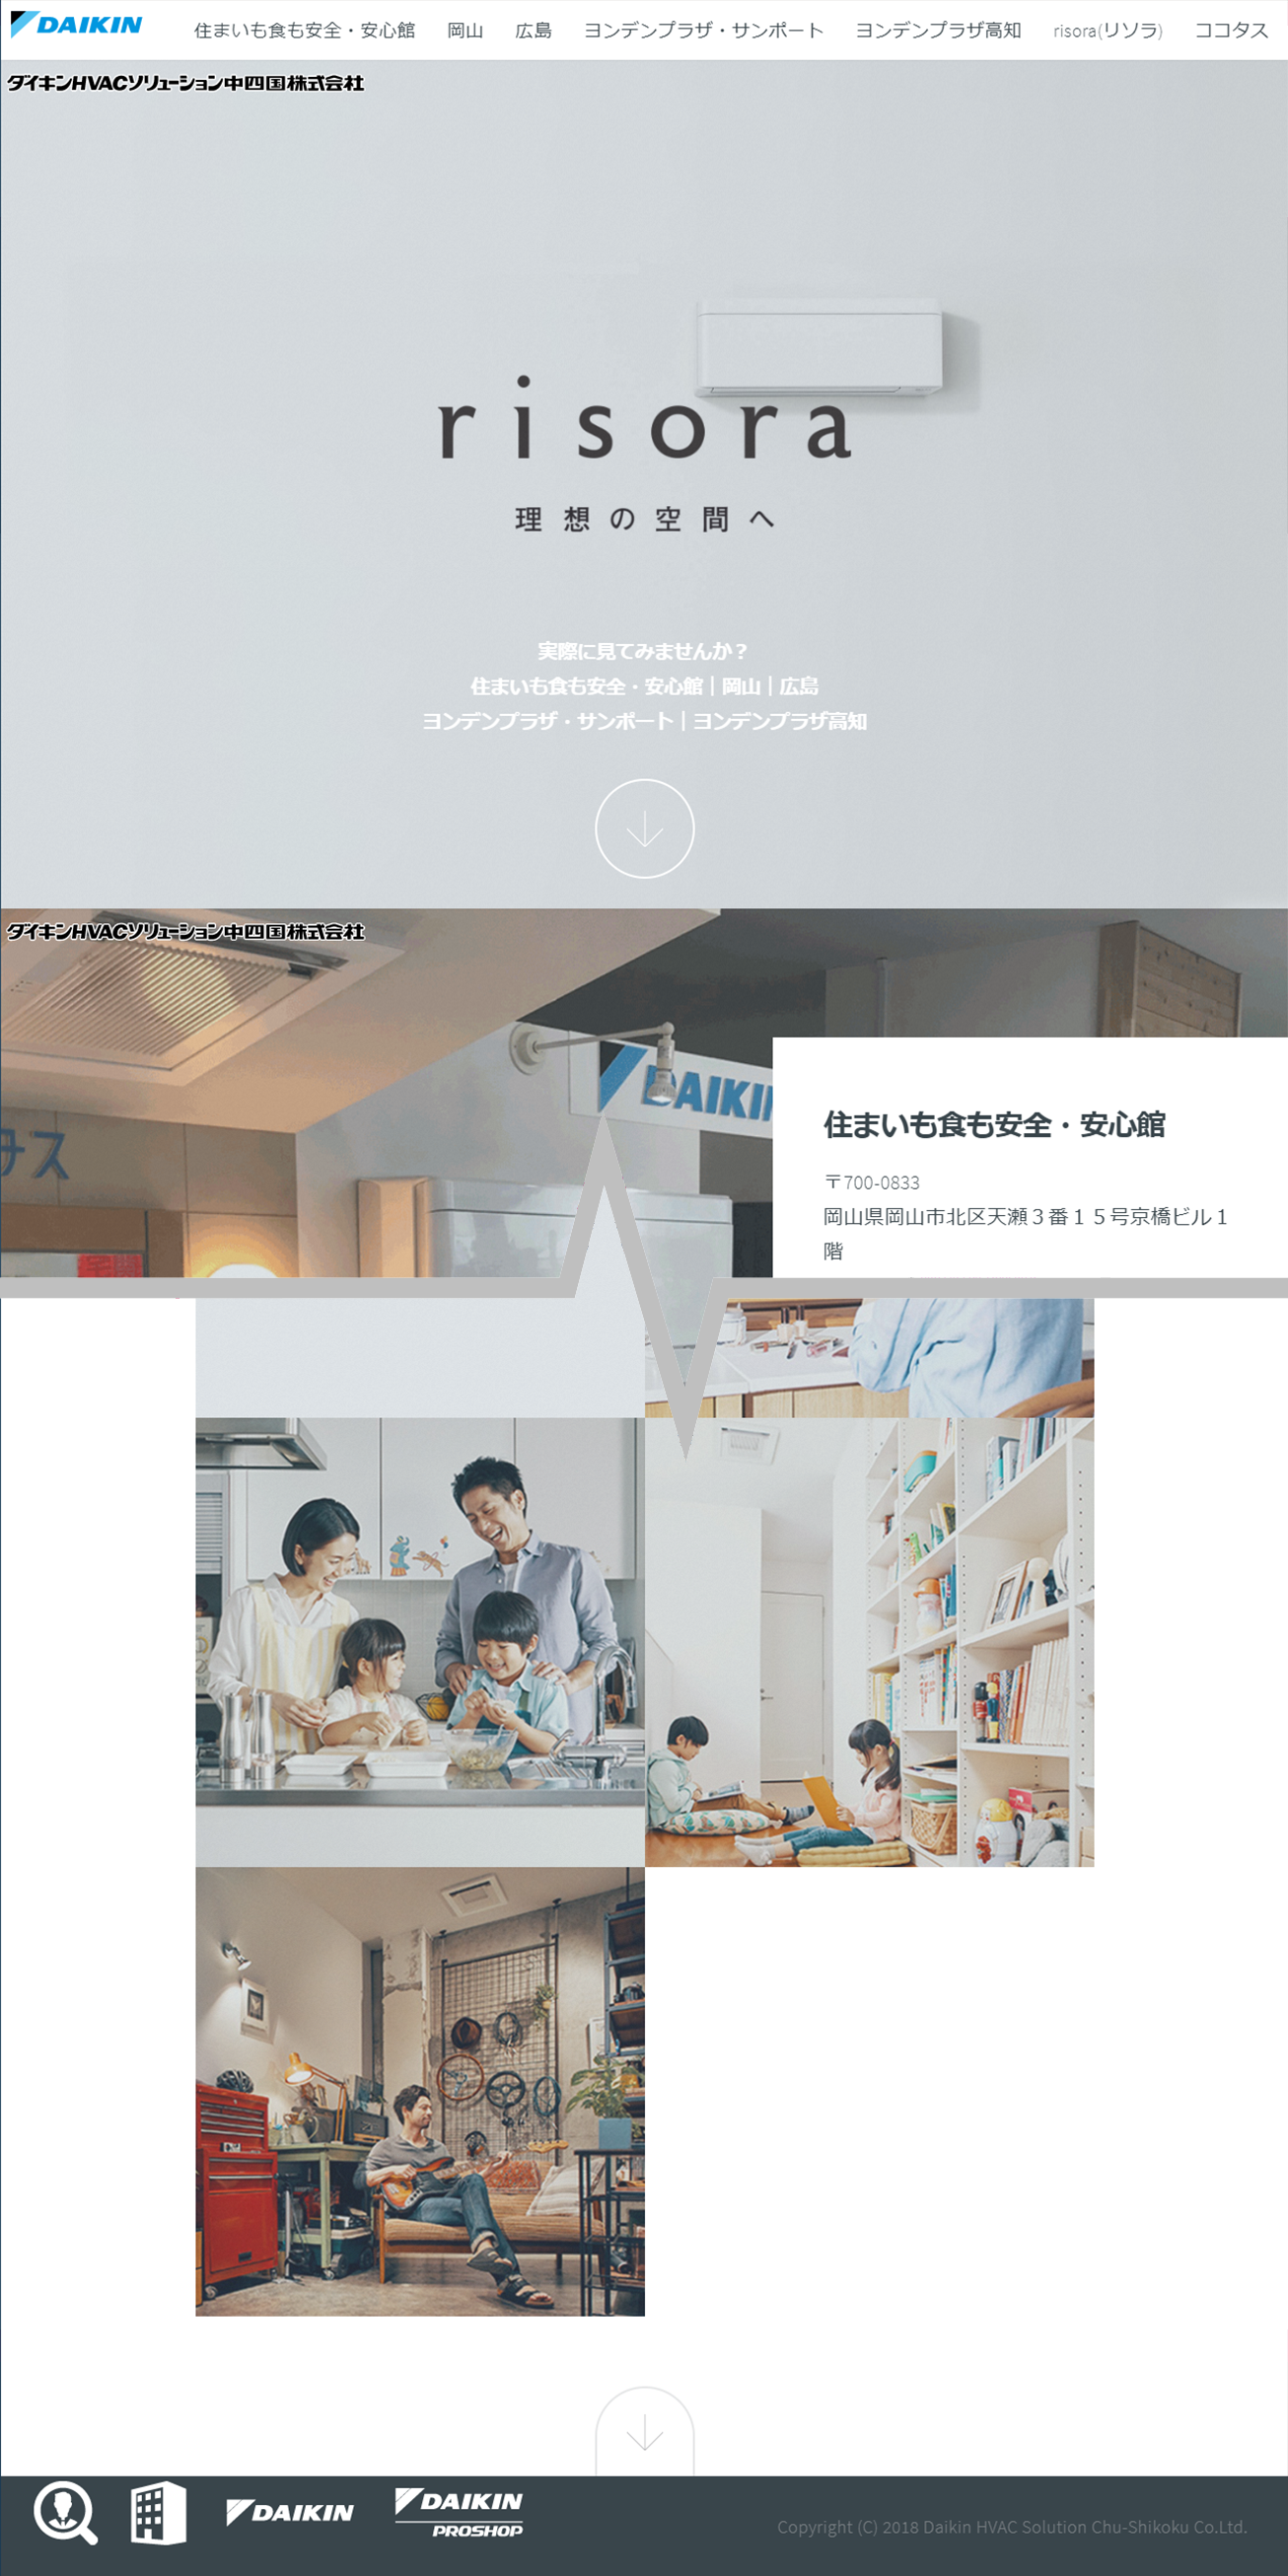 Daikin HVAC Solution Chu-Shikoku Co.Ltd.-risora-